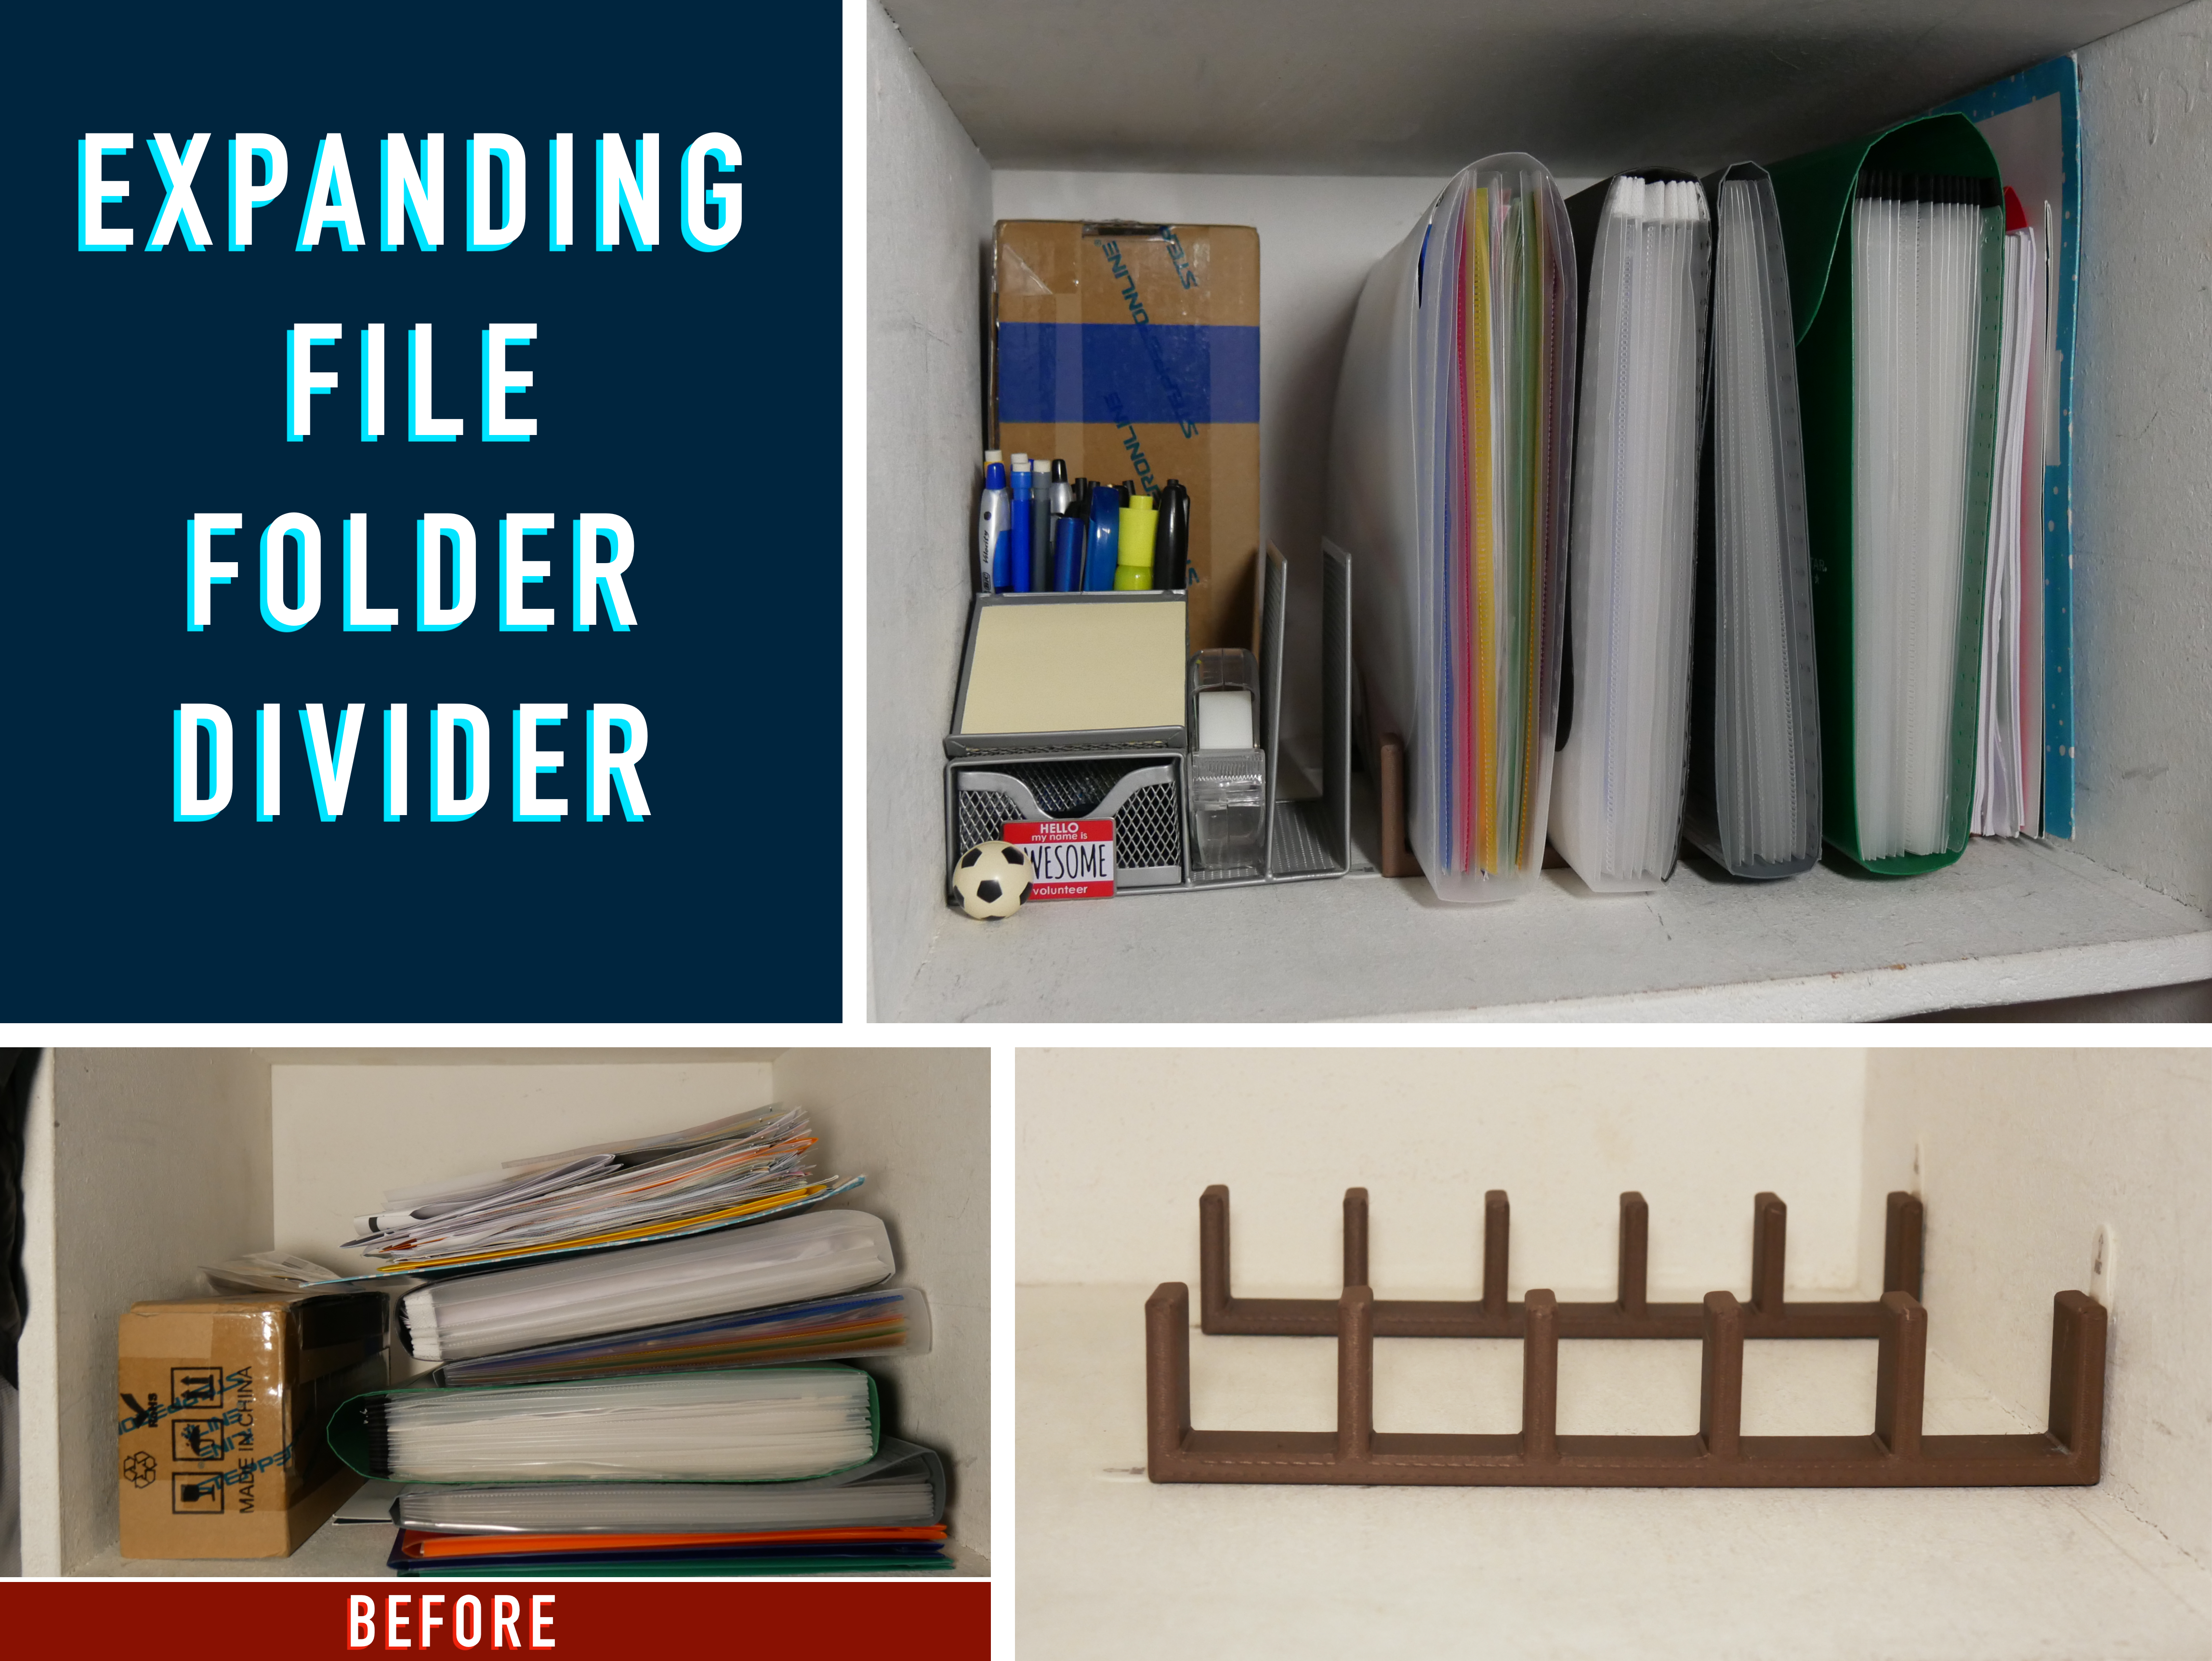 Expanding file folder divider